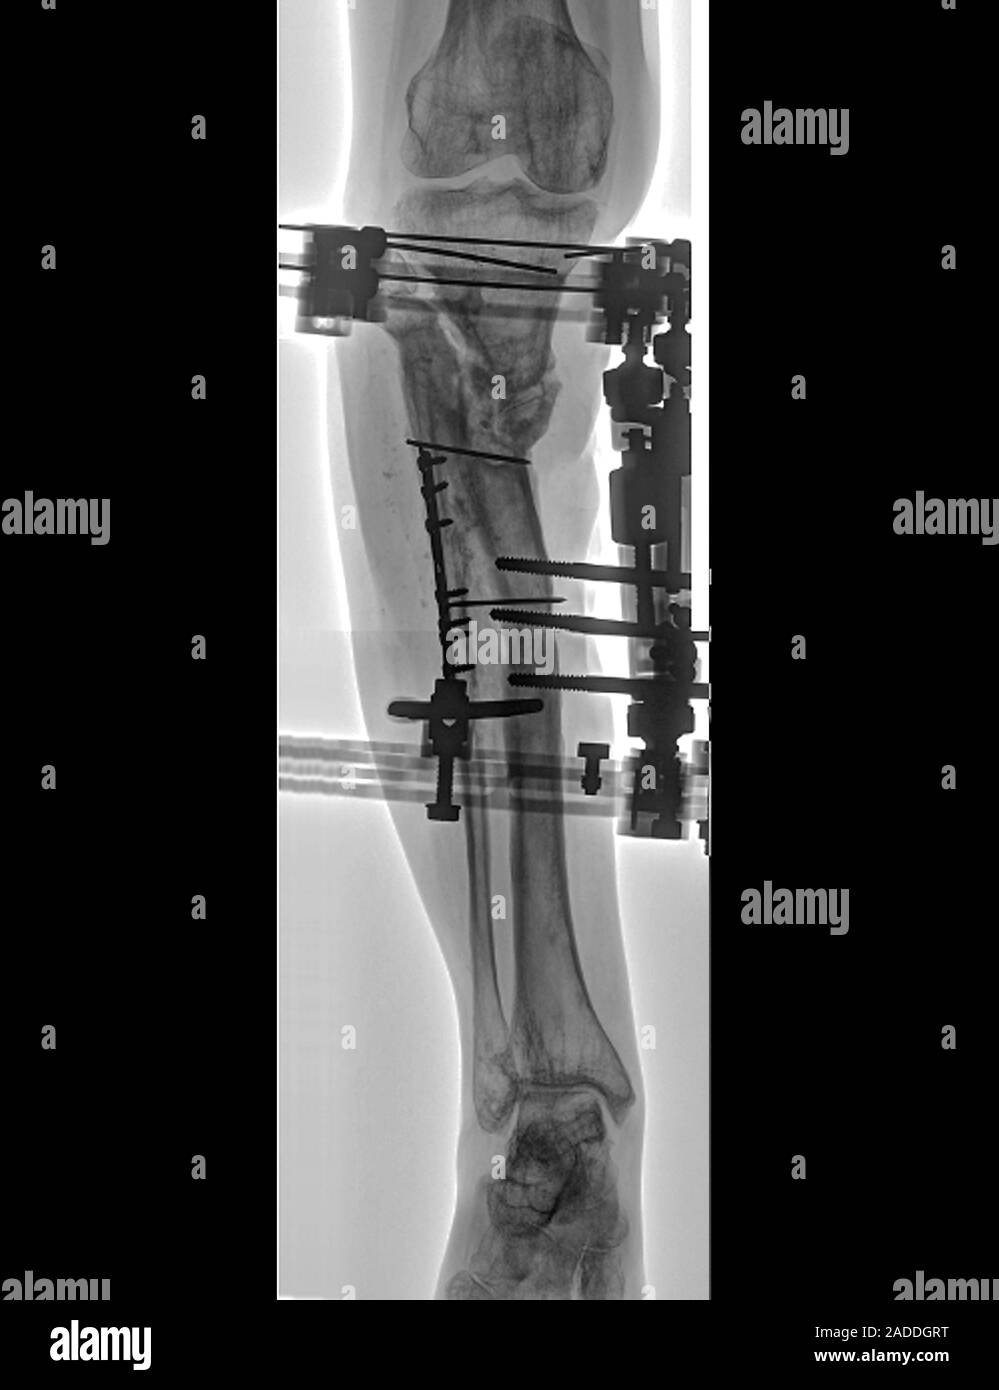 Anclado fracturado los huesos de la pierna inferior. Rayos X frontal de  clavos, tornillos y placas (blanco) implantado para celebrar juntos las  fracturas de tibia y peroné (la t Fotografía de stock -